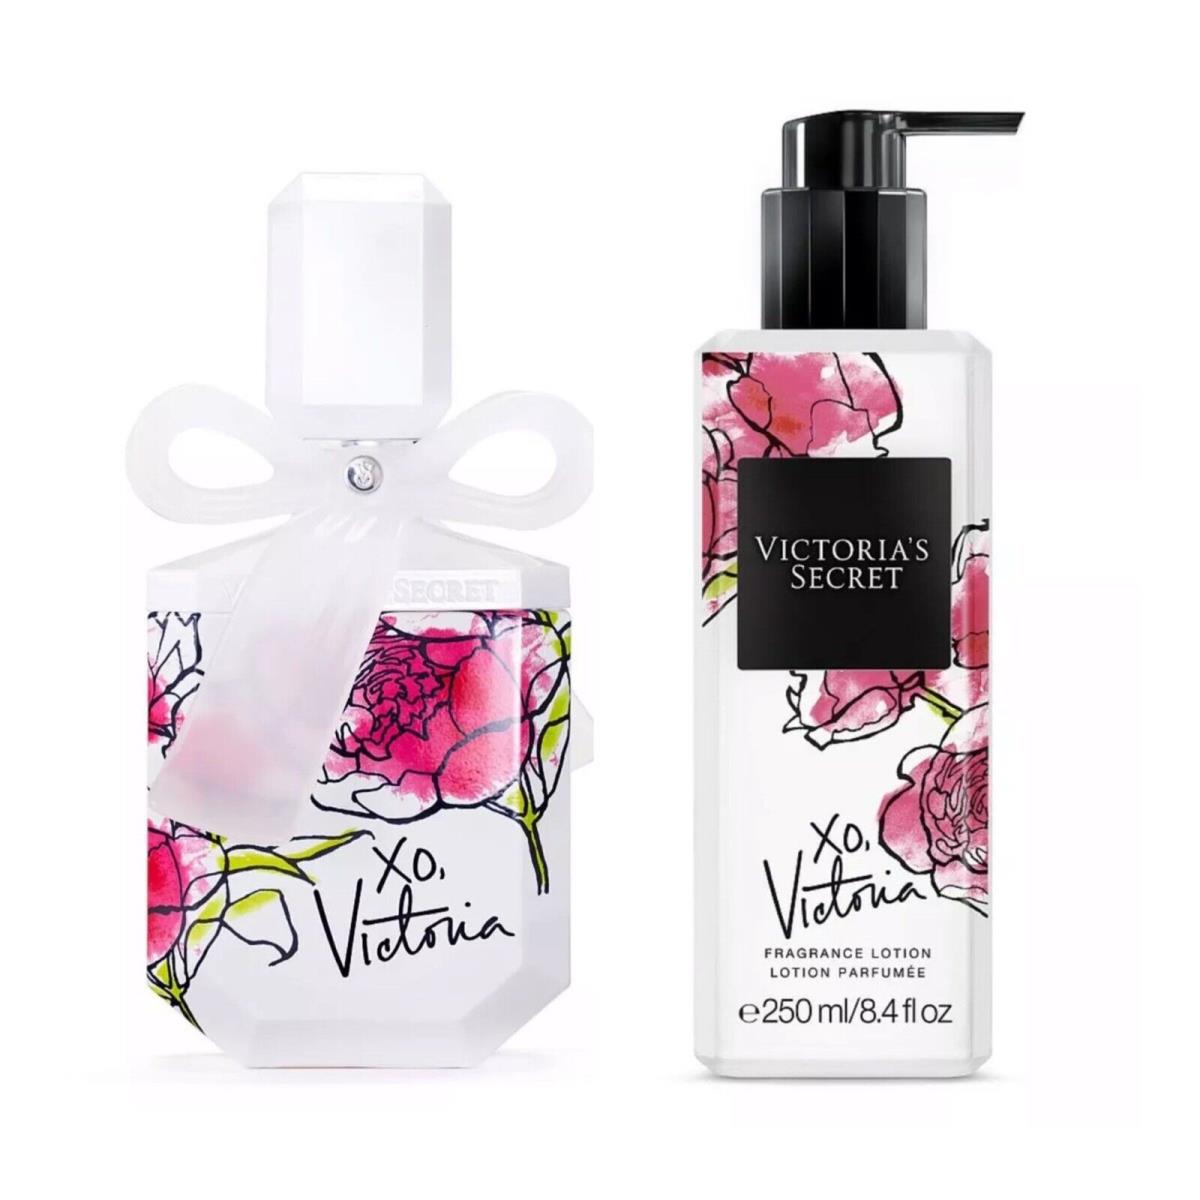 Victoria`s Secret XO Victoria Eau de Parfum 3.4 Fl.oz. and Fragrance Lotion